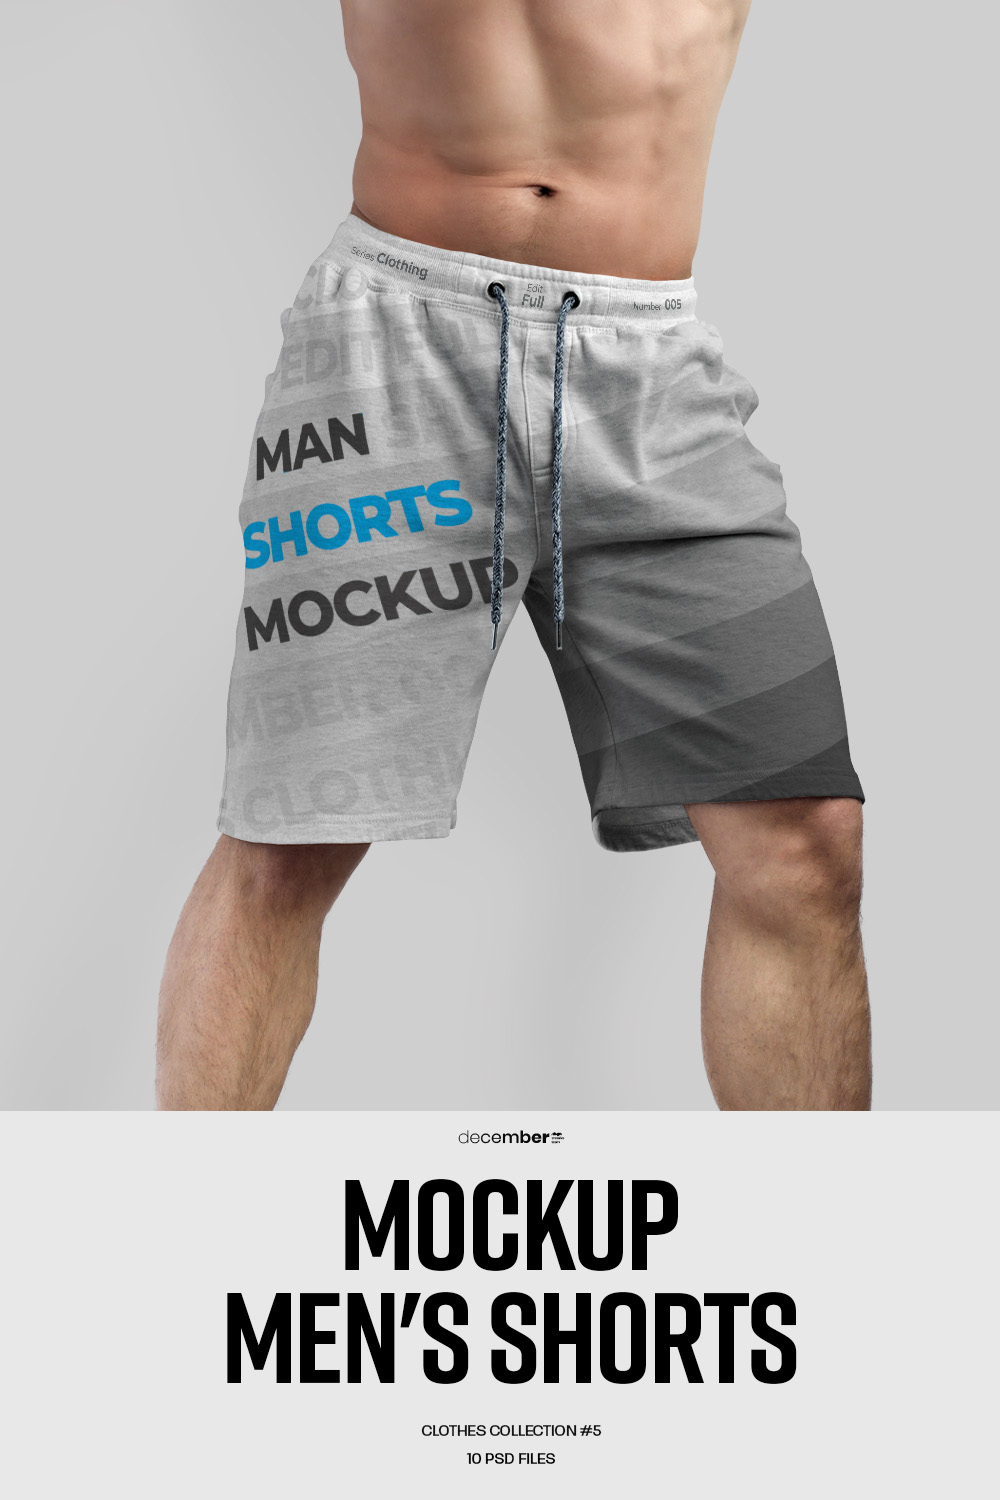 10 Mockups Athletic Shorts Man pinterest image.